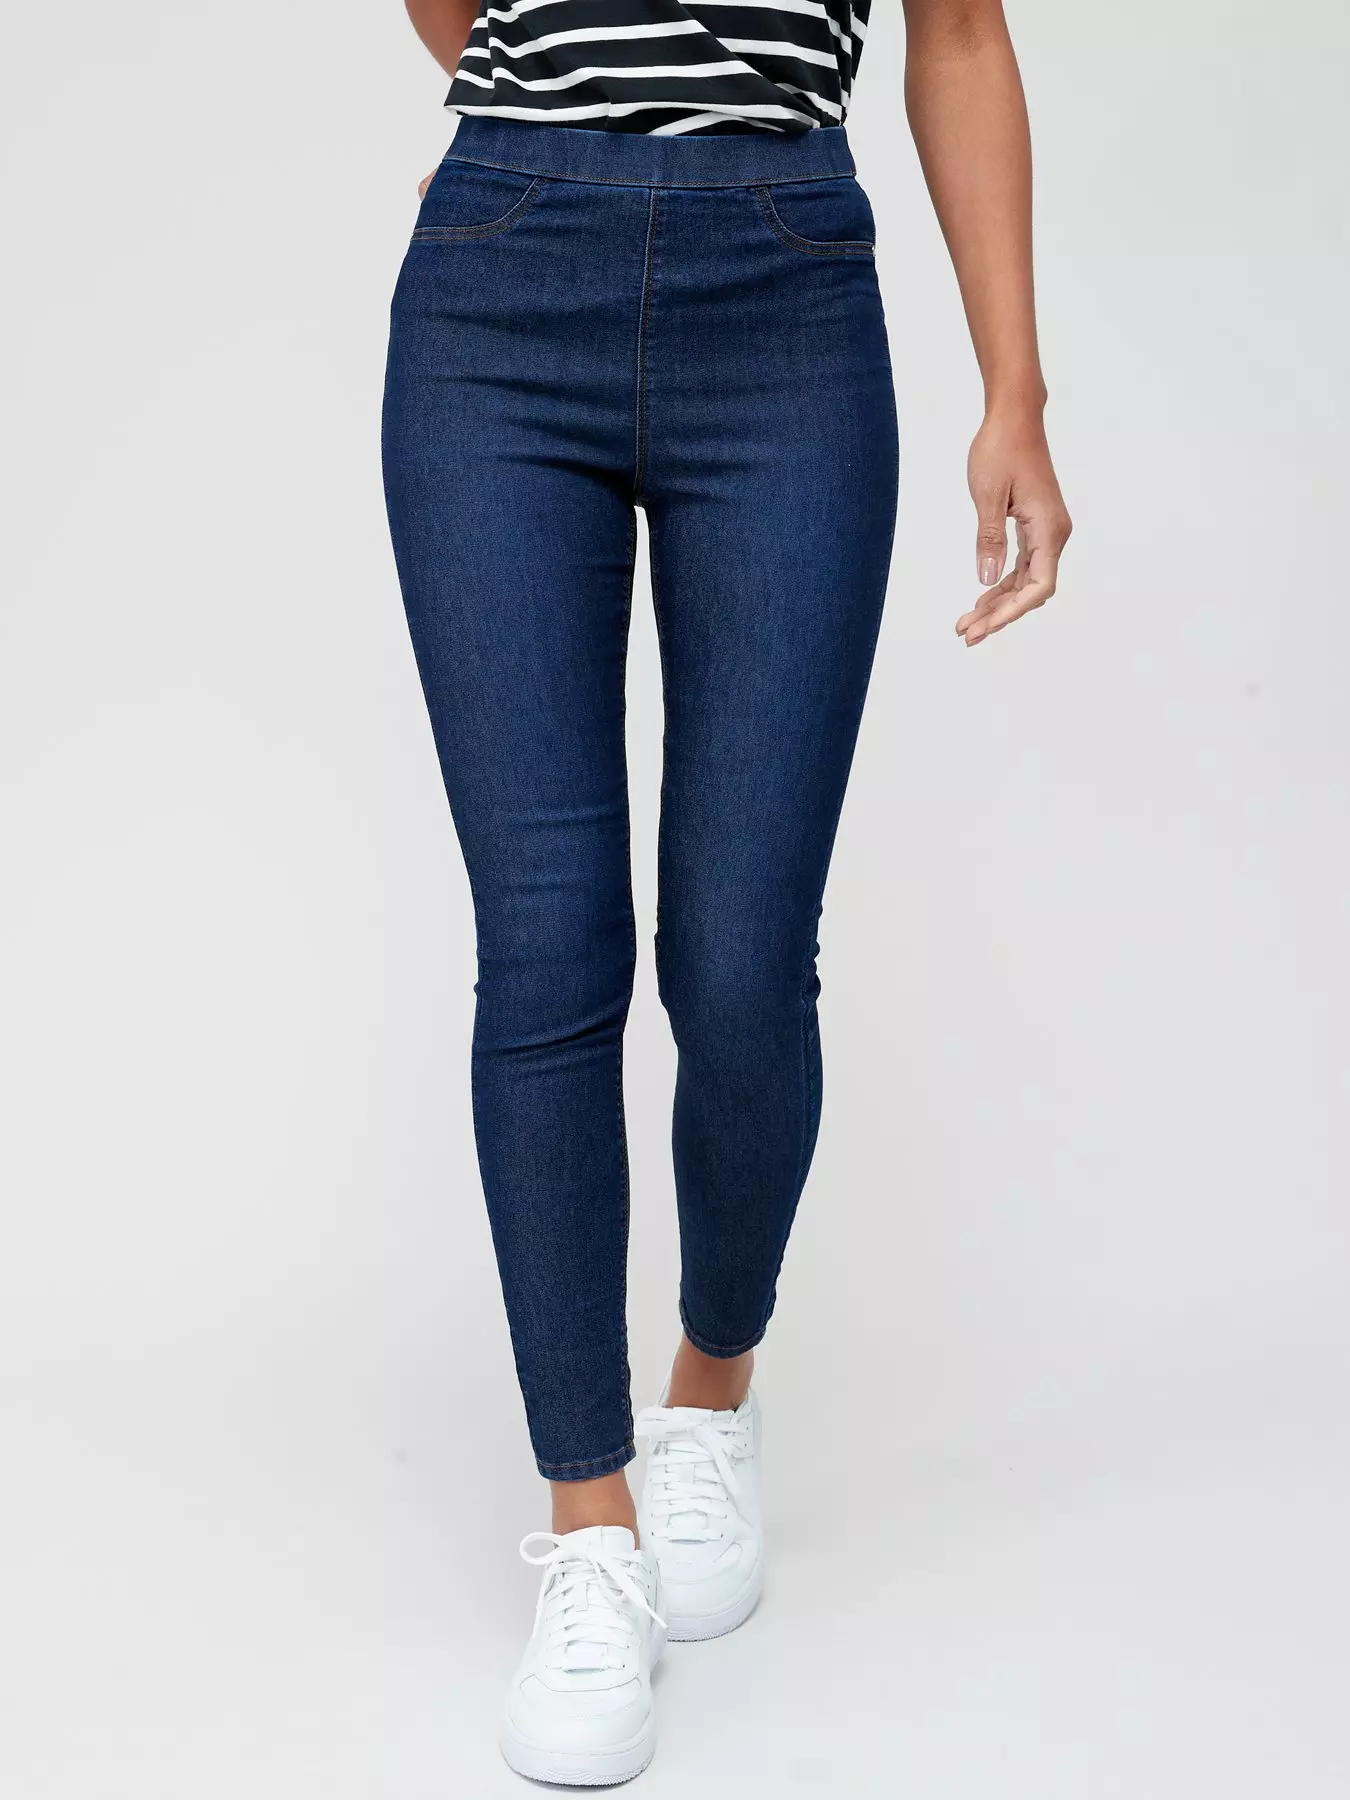 Women's Jeans | Shop Denim Jeans for Ladies UK 